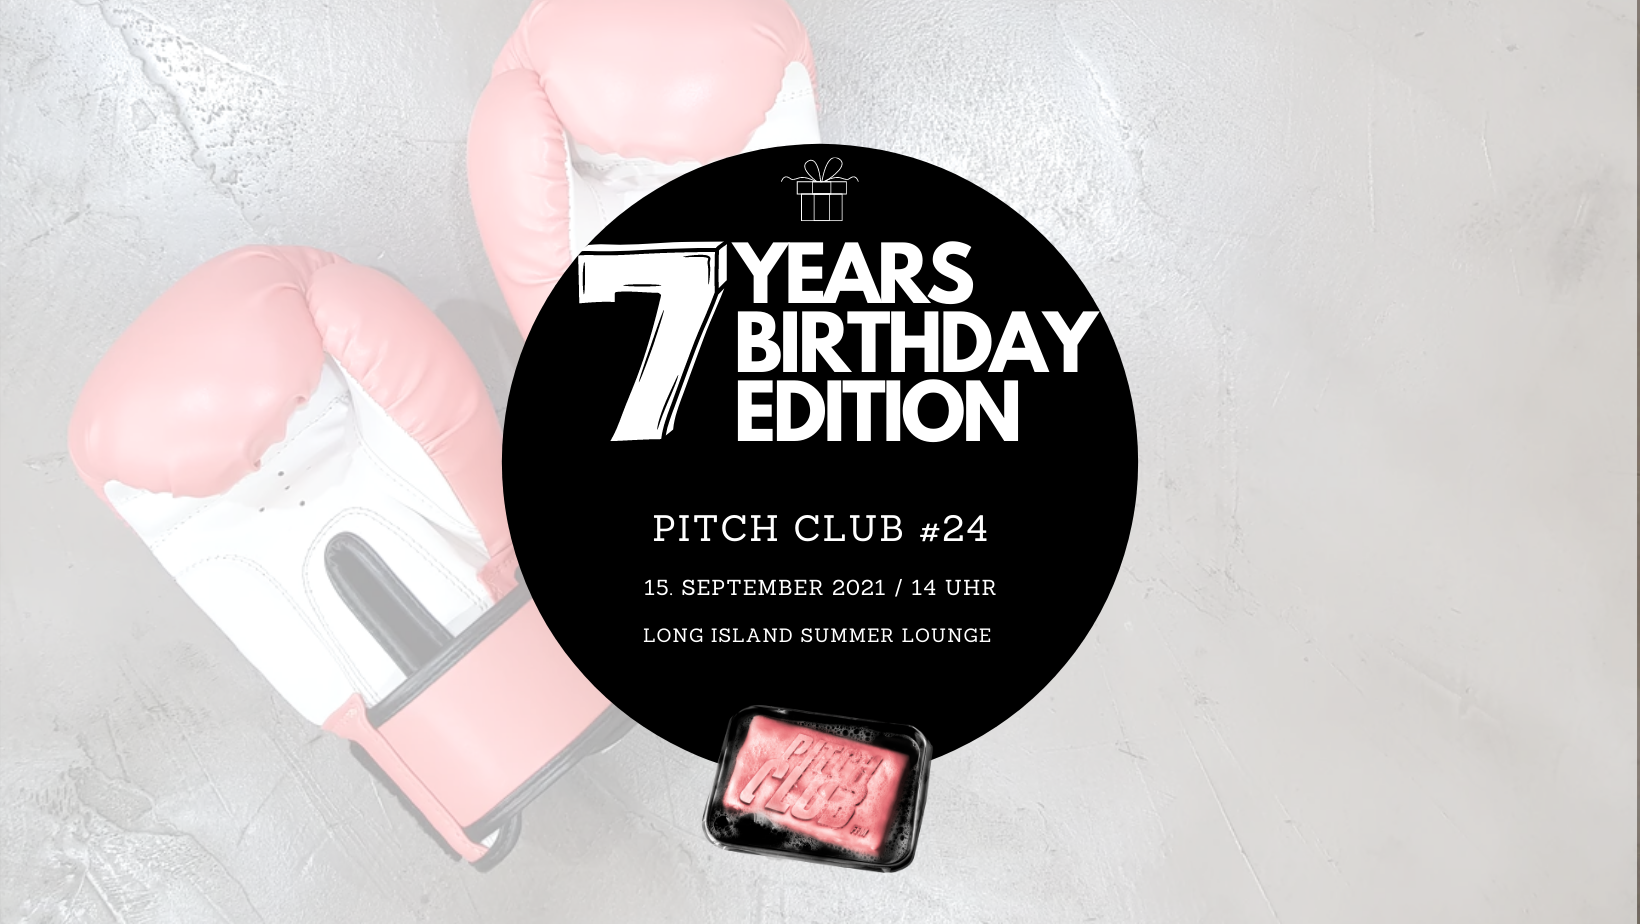 Pitch Club #24 - Birthday Edition 